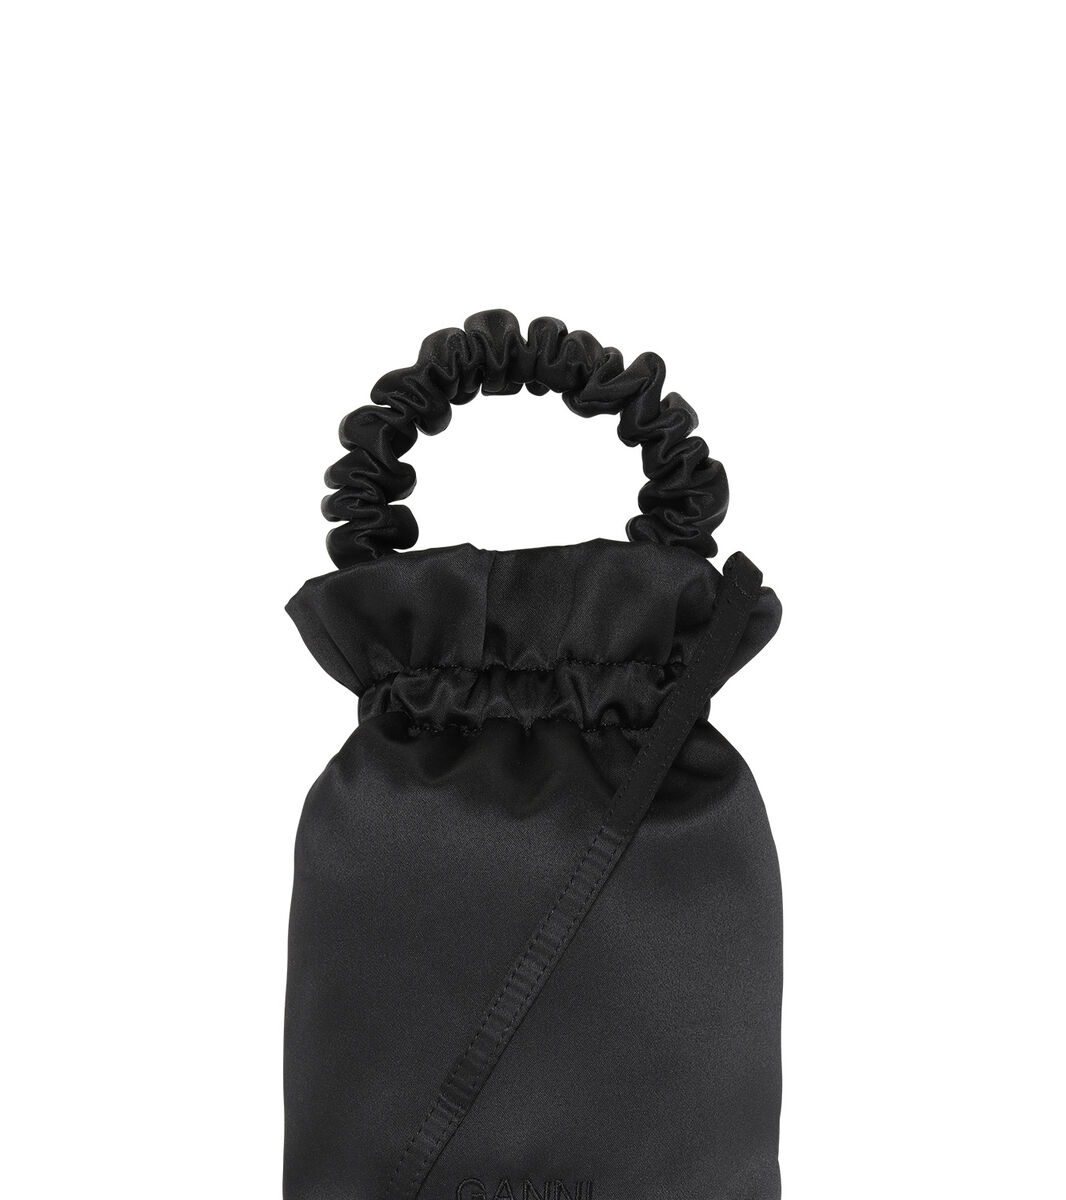 Tasche mit gerafftem Haltegriff, Polyester, in colour Black - 1 - GANNI